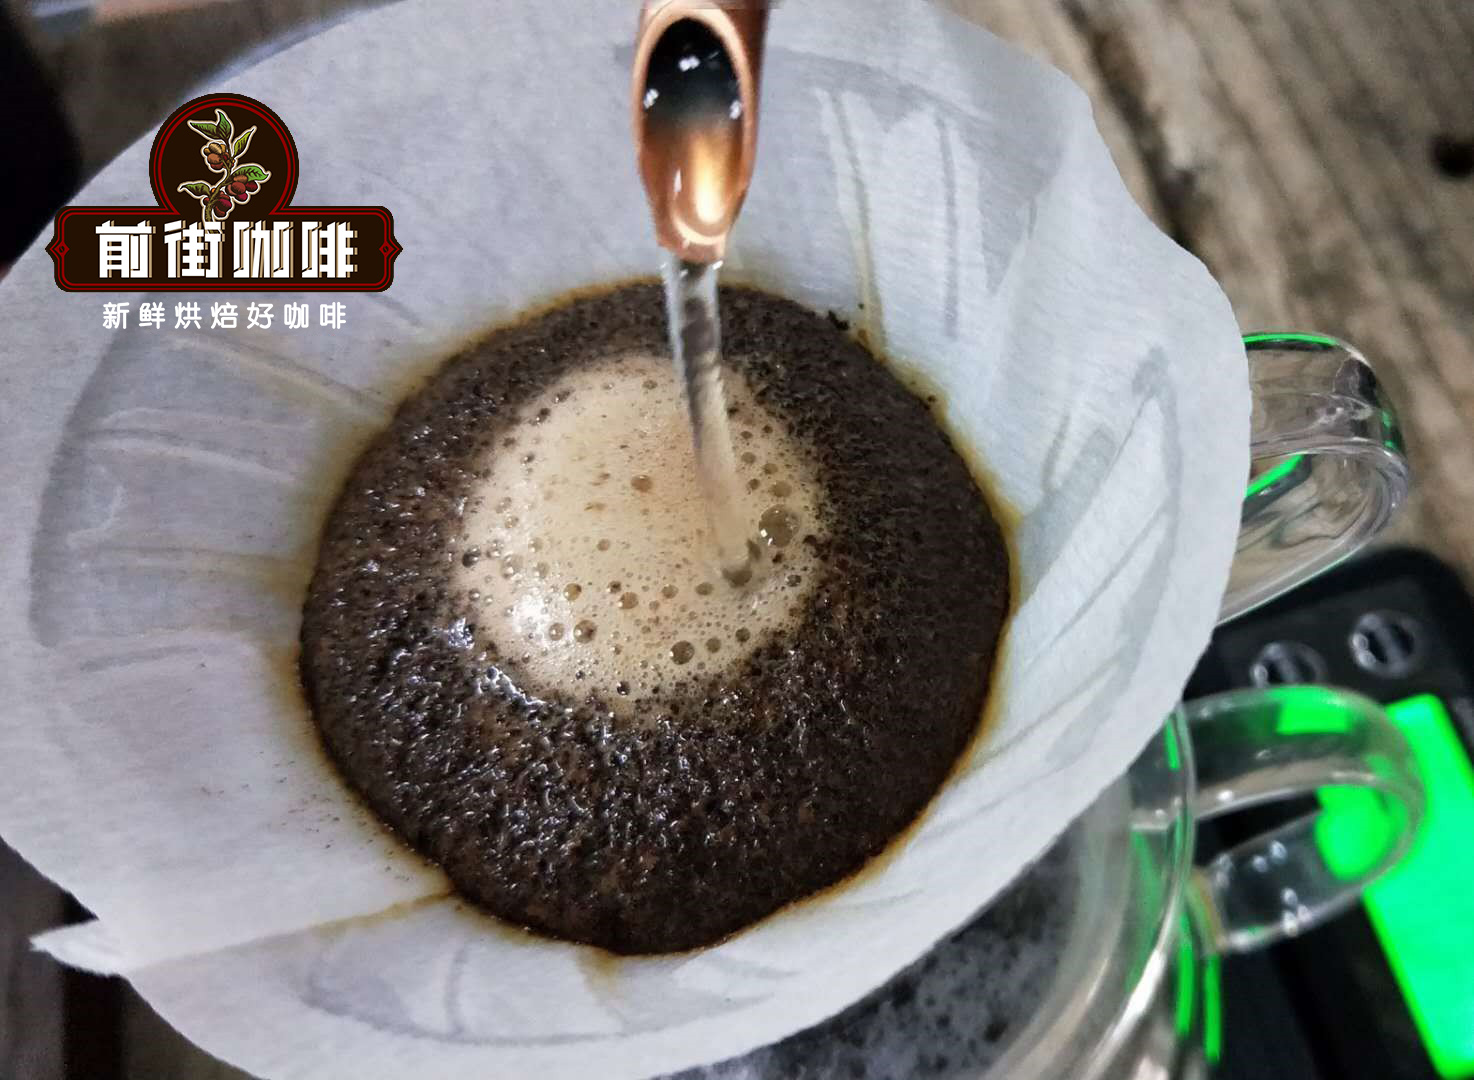 咖啡粉越细咖啡风味就越浓吗 咖啡粉的粗细会影响咖啡萃取的风味吗